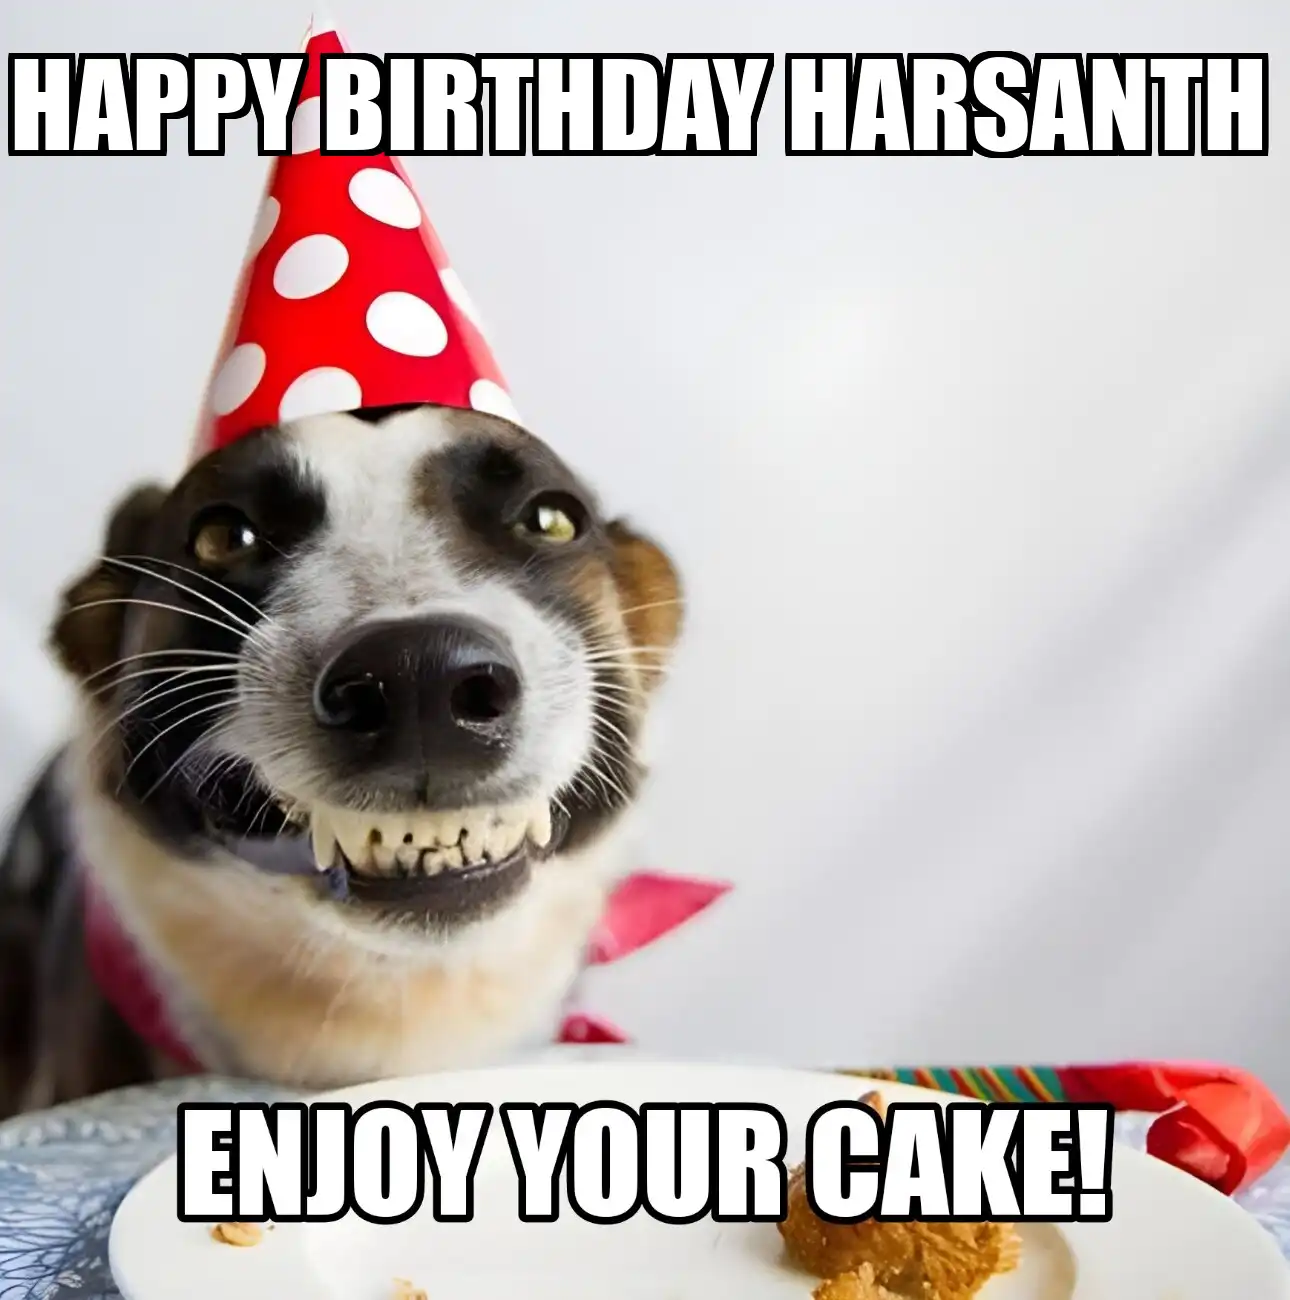 Happy Birthday Harsanth Enjoy Your Cake Dog Meme